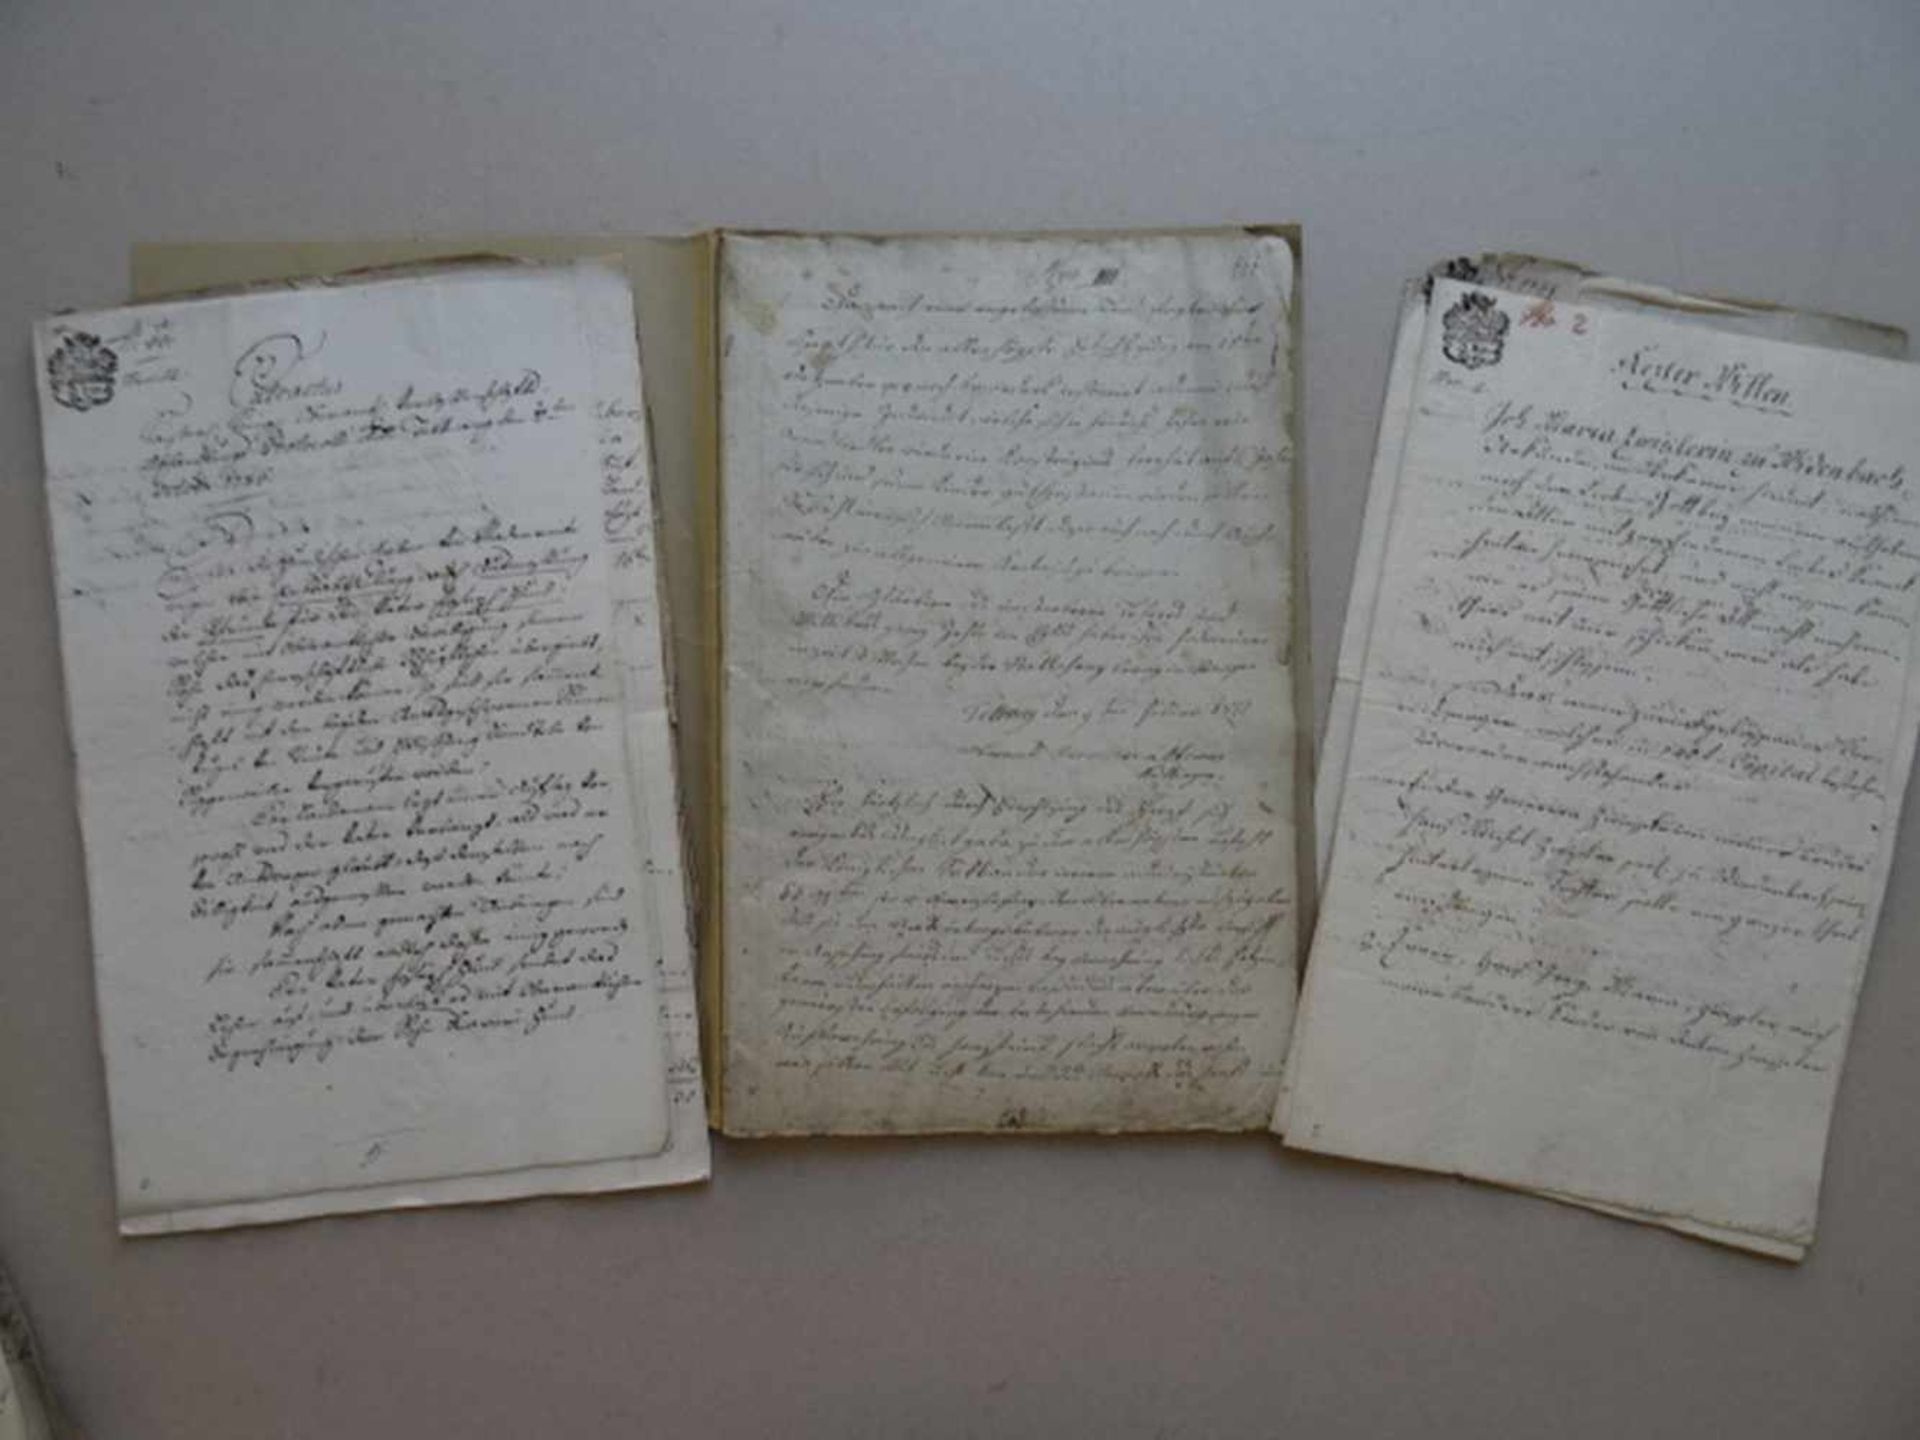 Baden-Württemberg.-Konvolut von 15 handschriftlichen Notariats-Schreiben, Verträgen, beglaubigten - Bild 2 aus 2